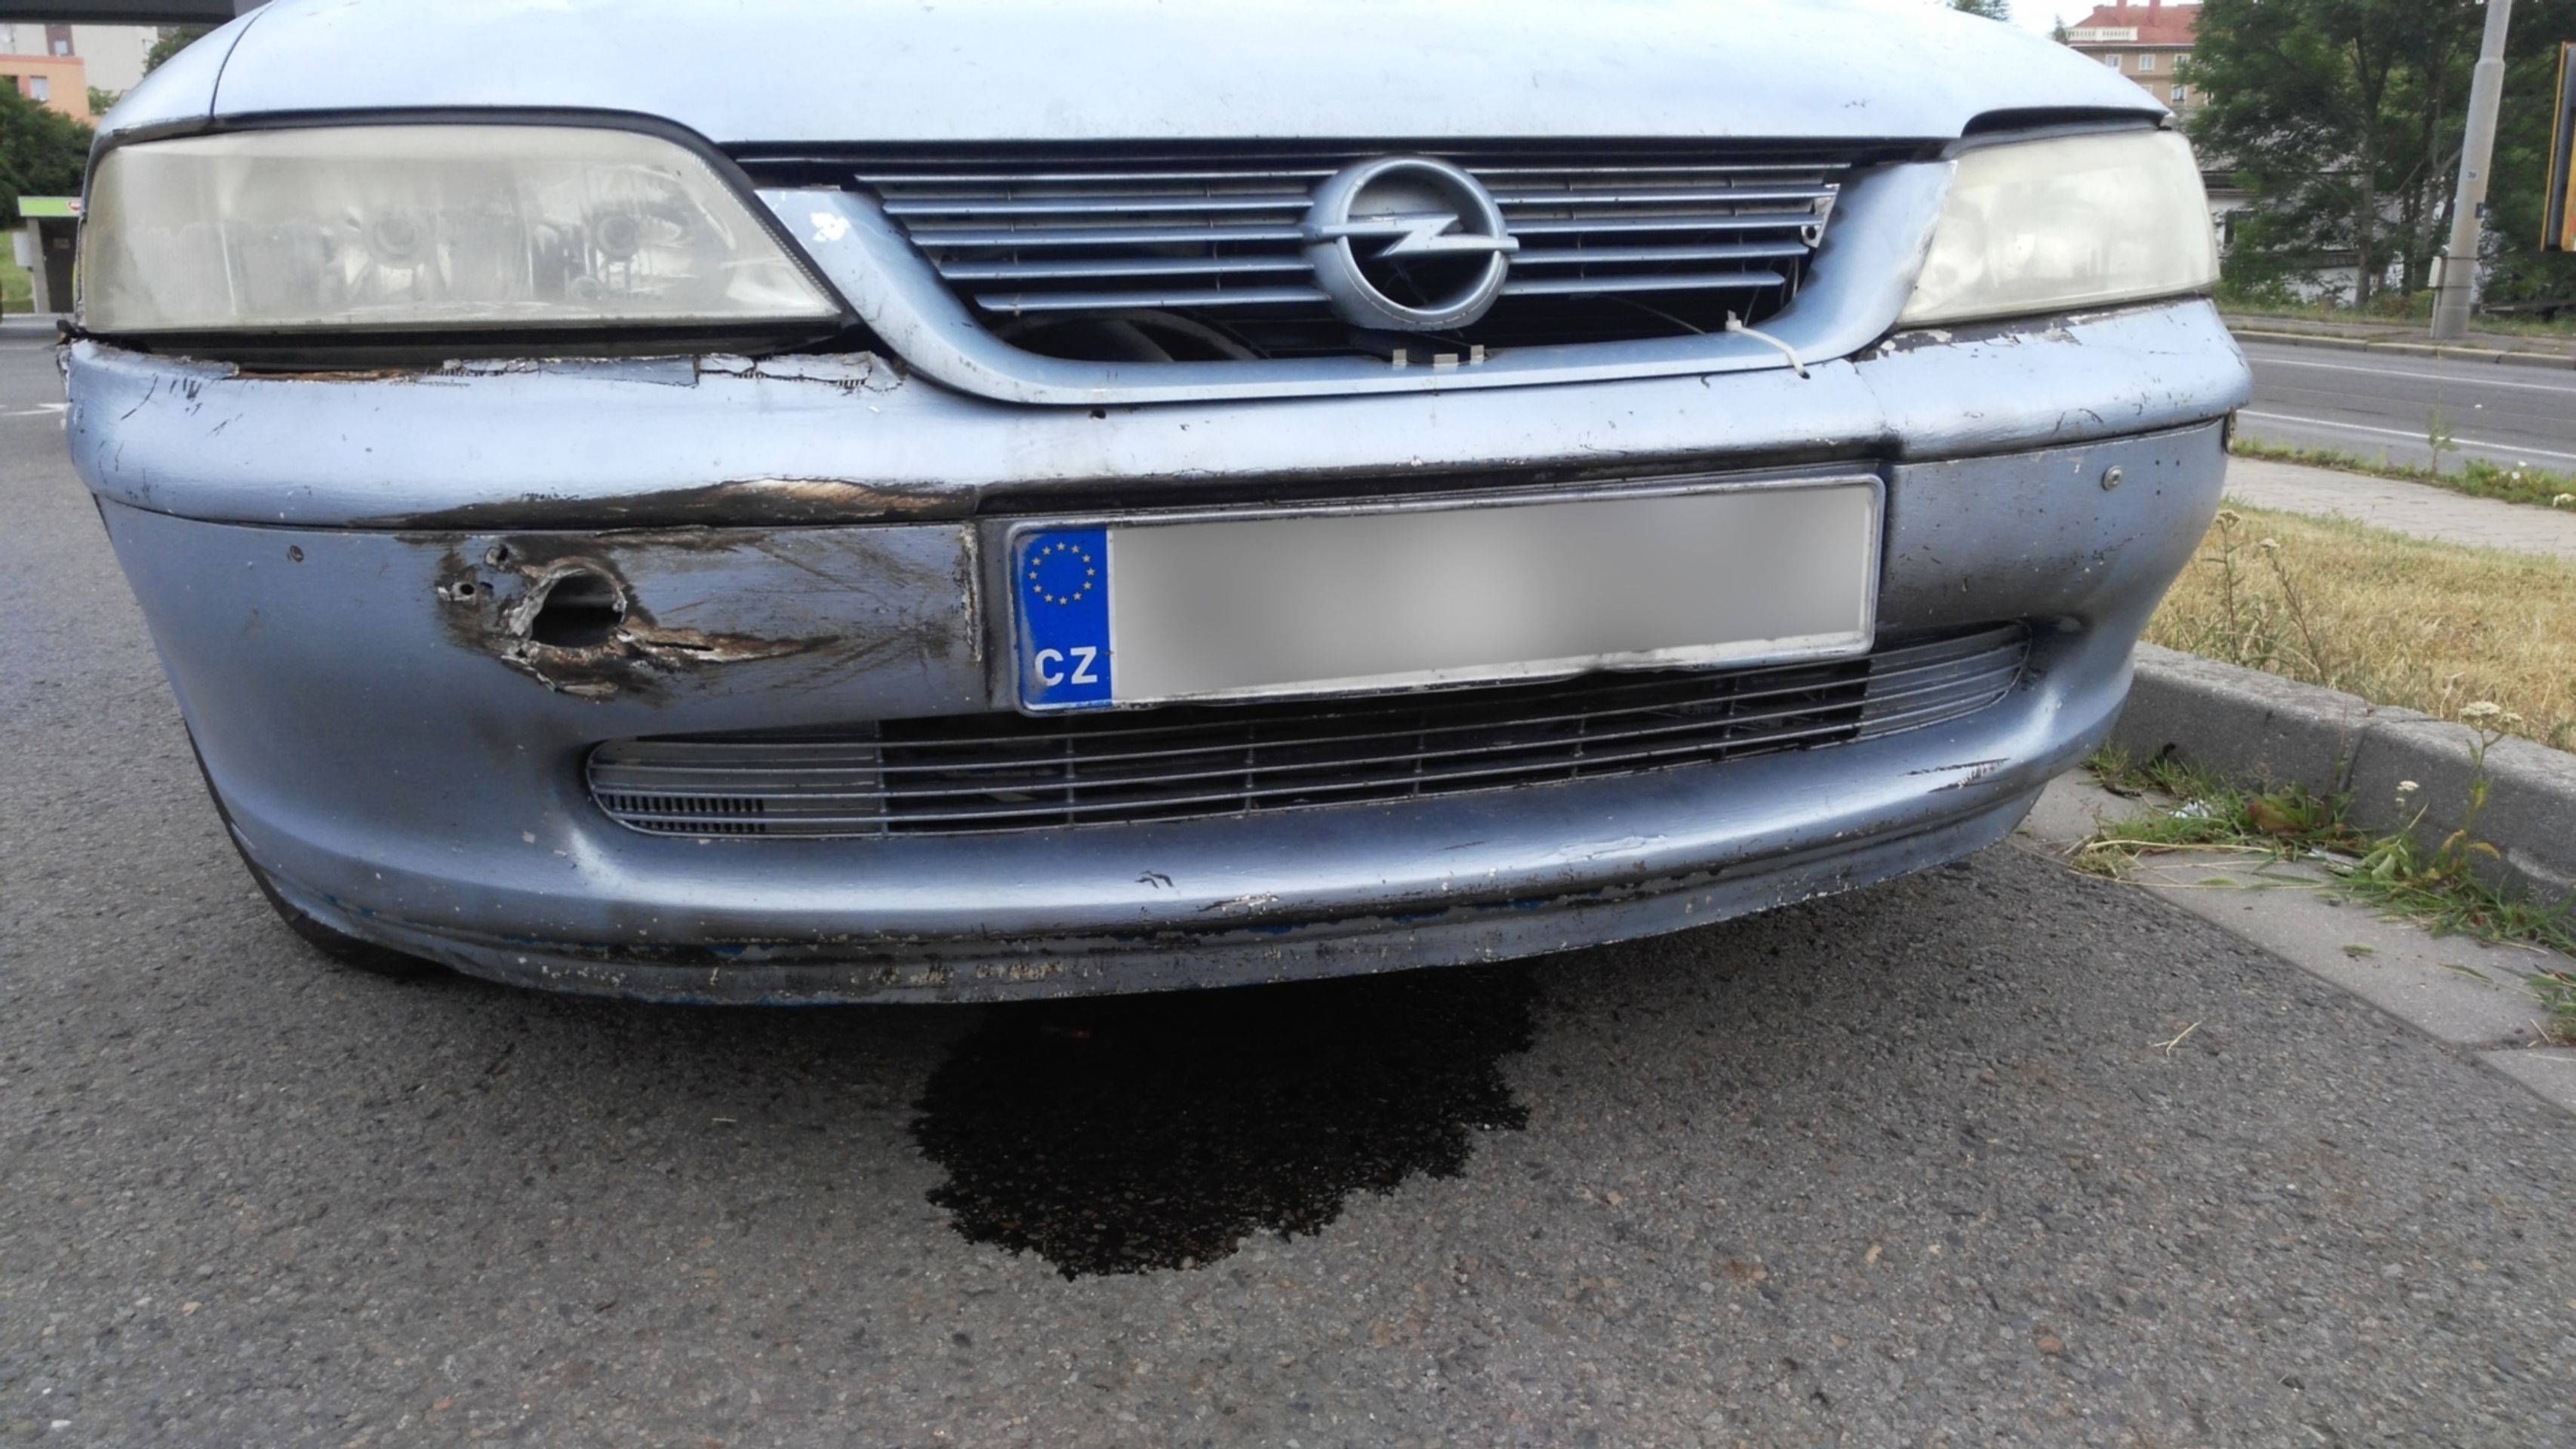 Auto ve velmi špatném technickém stavu v Ostravě-Porubě - 1 - GALERIE: Auto ve velmi špatném technickém stavu v Ostravě-Porubě (1/4)